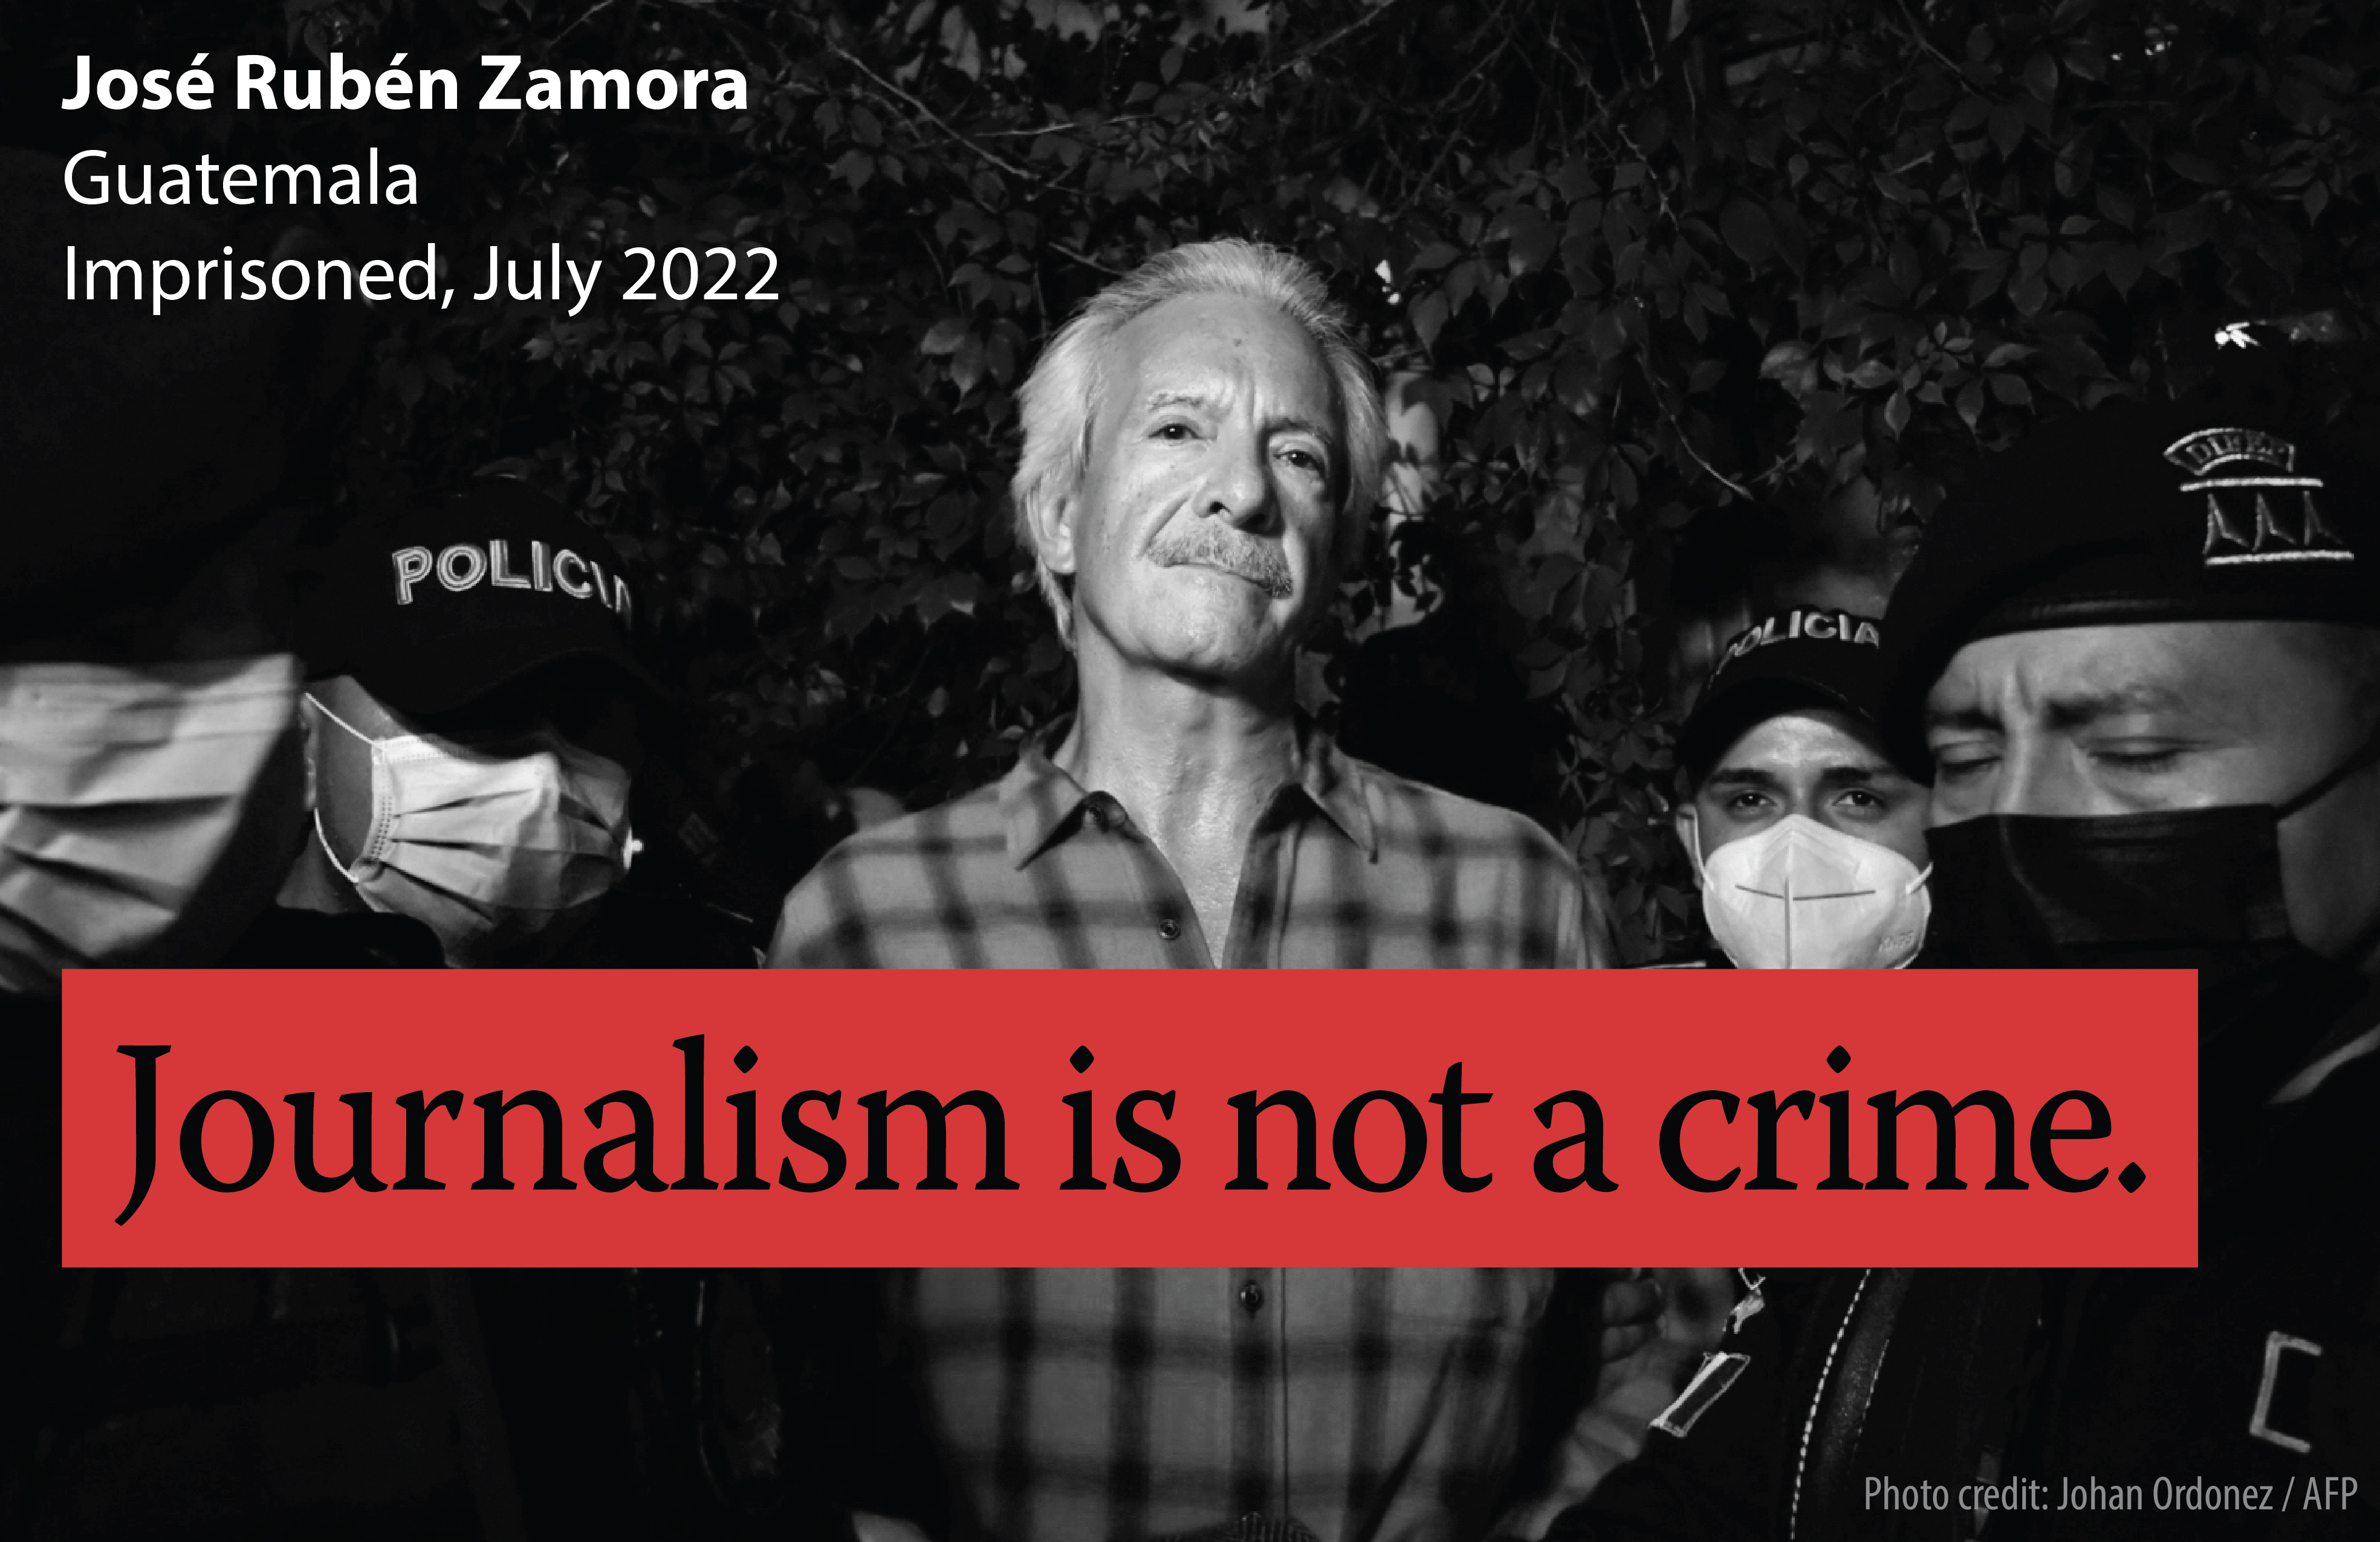 Journalism is not a crime: José Rubén Zamora flyer